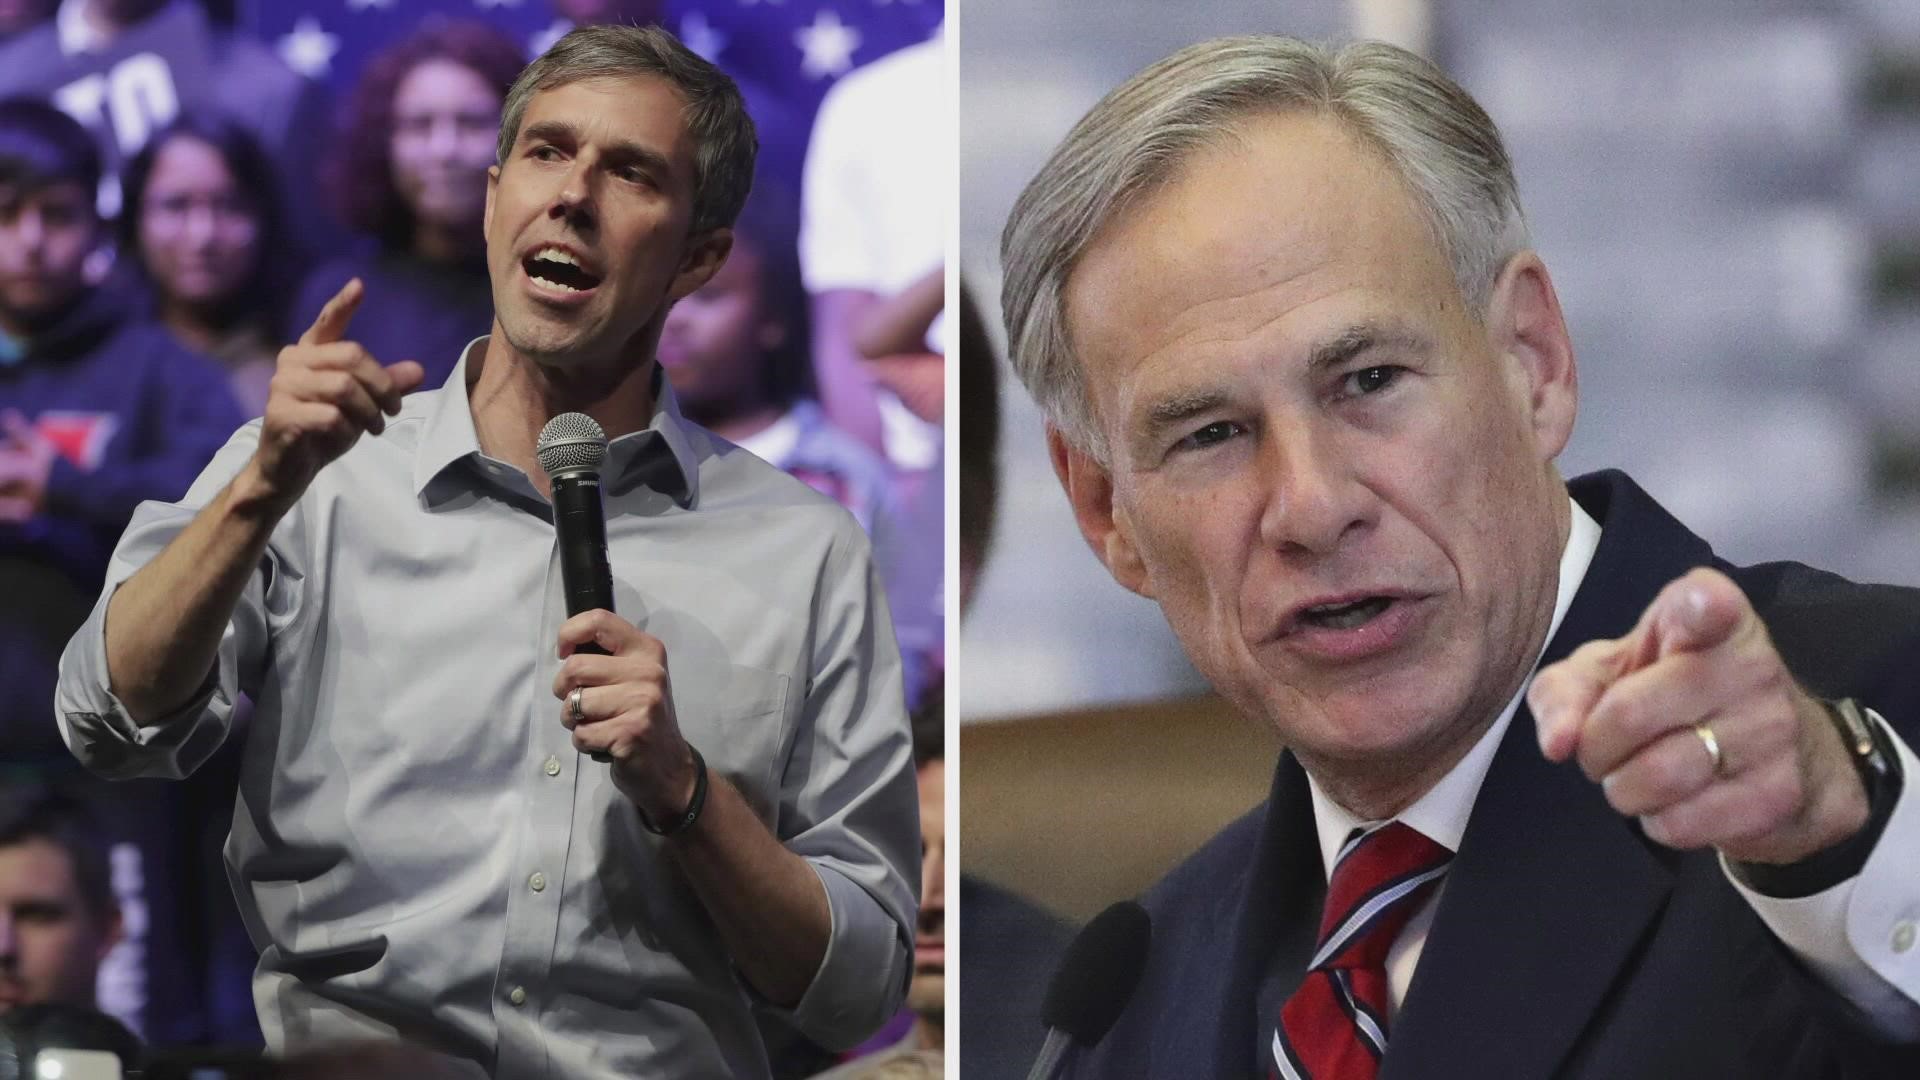 Former congressman Beto O'Rourke will be taking on Gov. Greg Abbott in the Texas gubernatorial race.